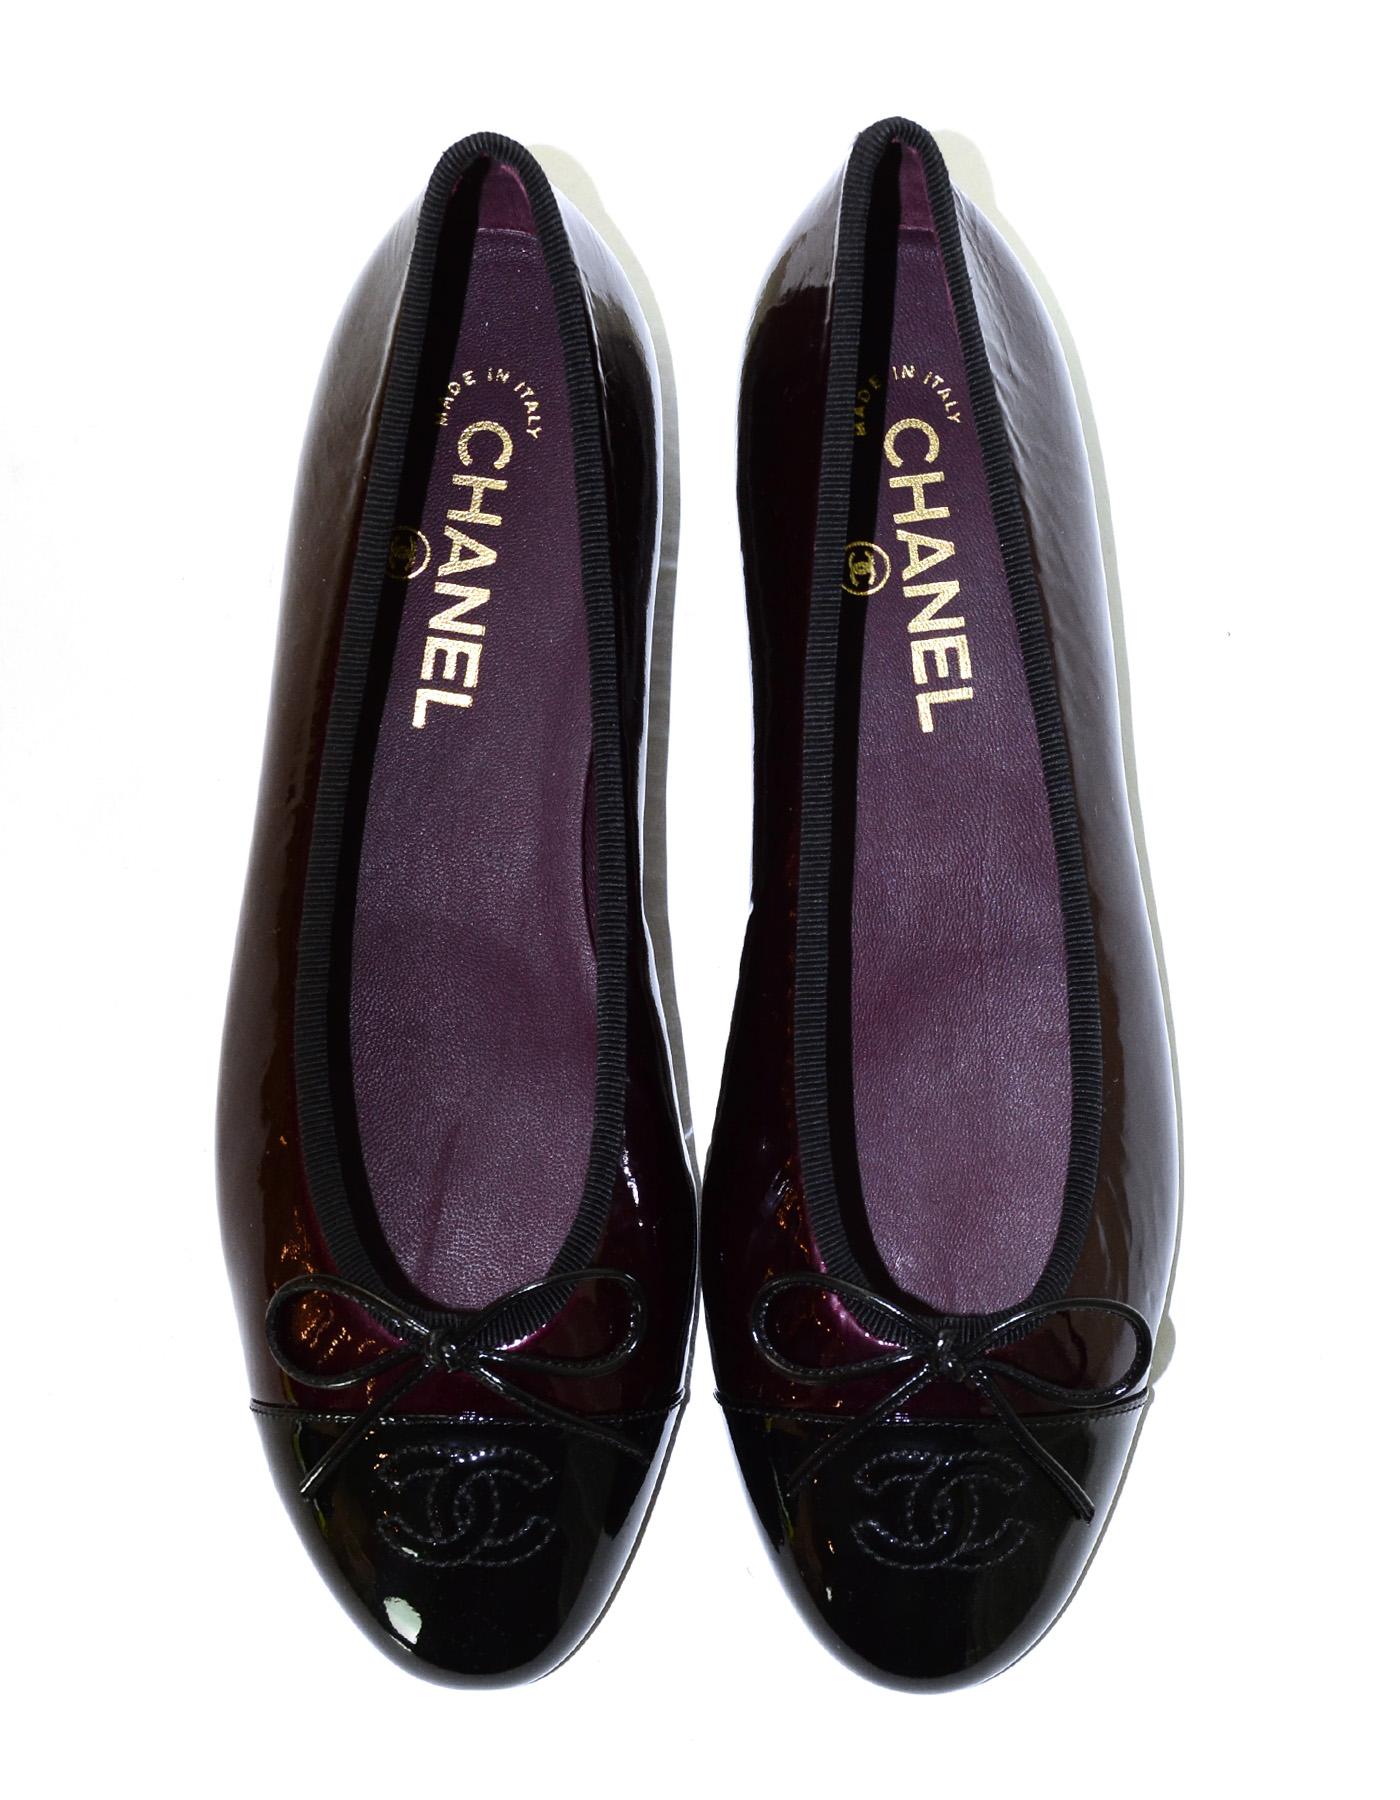 Women's Chanel New Bordeaux/Black Patent Leather Cap Toe CC Ballet Flats Sz 38